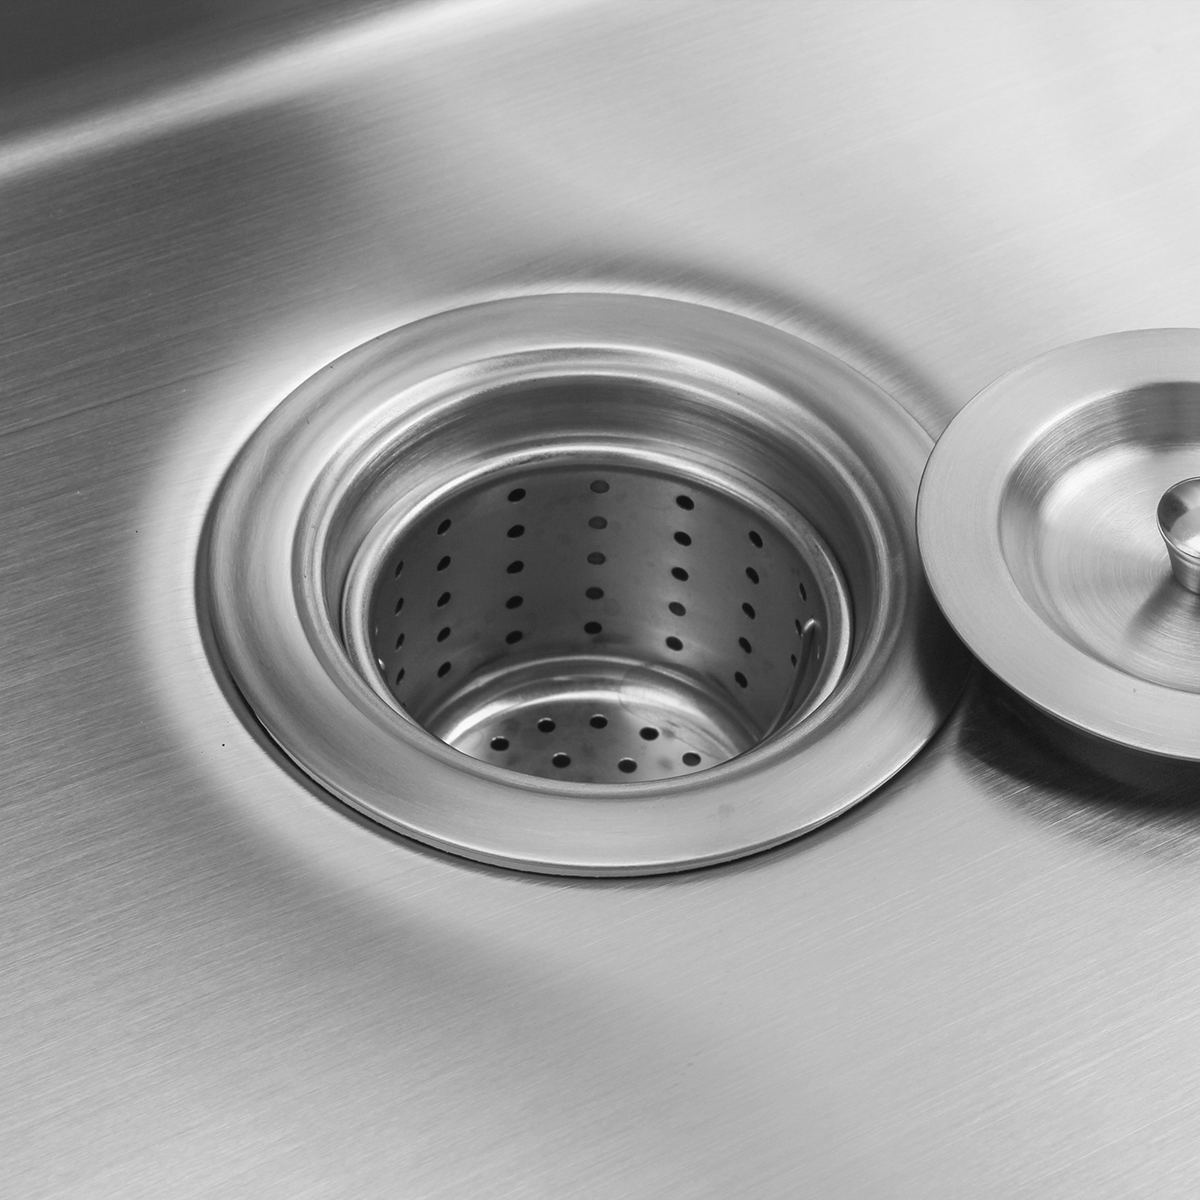 18 Gauge 304 Stainless Steel Handmade Undermount PVD Nano Kitchen Sink